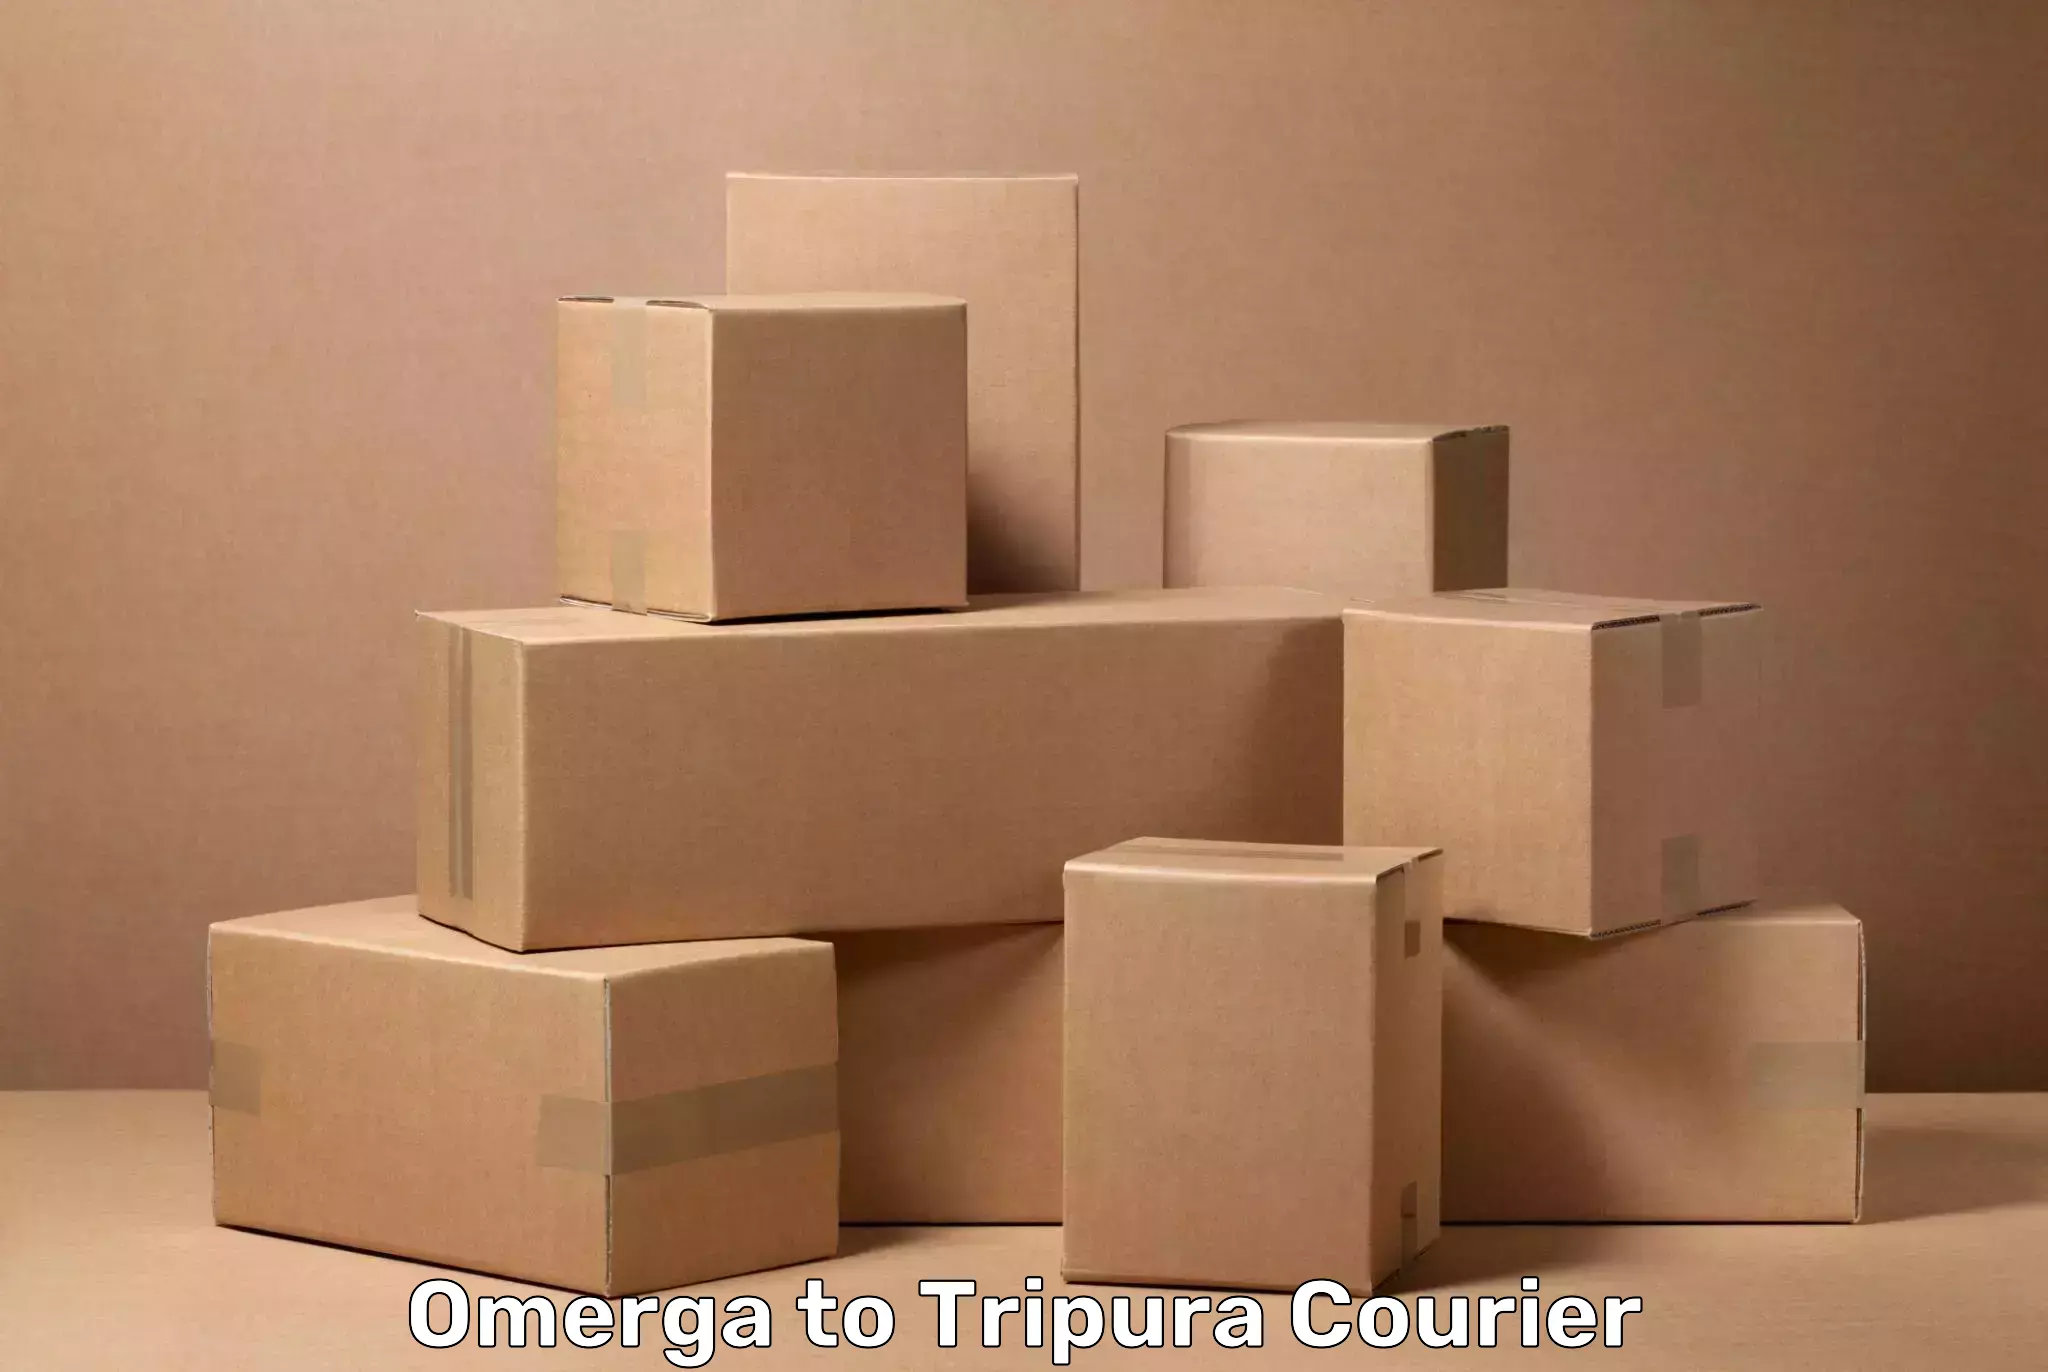 Luggage transport service Omerga to West Tripura